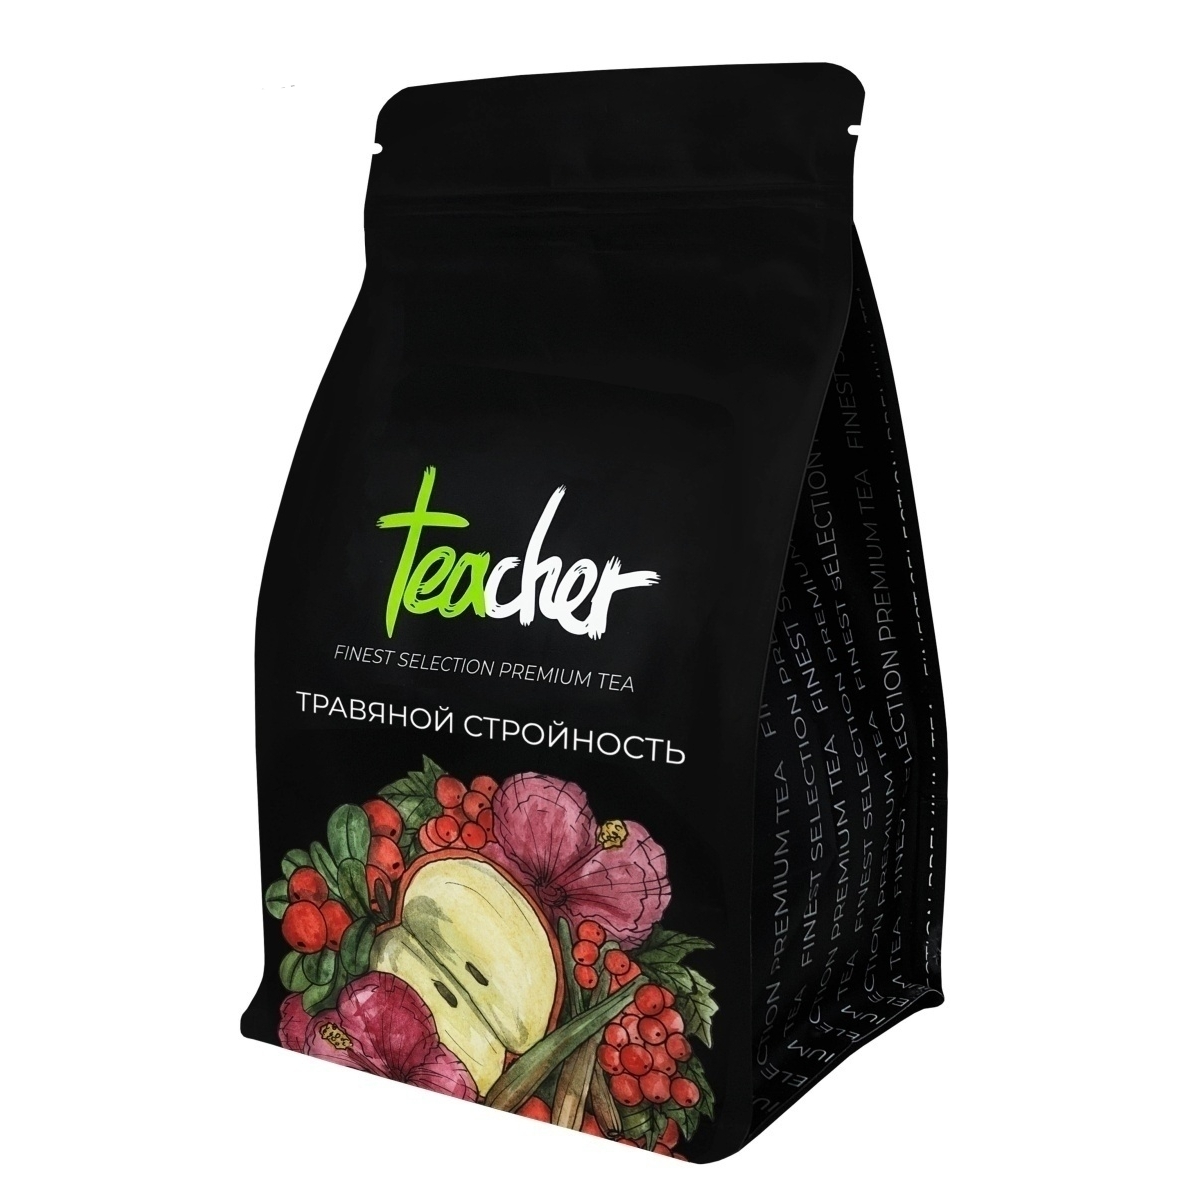 Чай травяной Teacher Стройность, 250 г чай травяной hempico конопля с листом смородины листовой с добавками 30 г